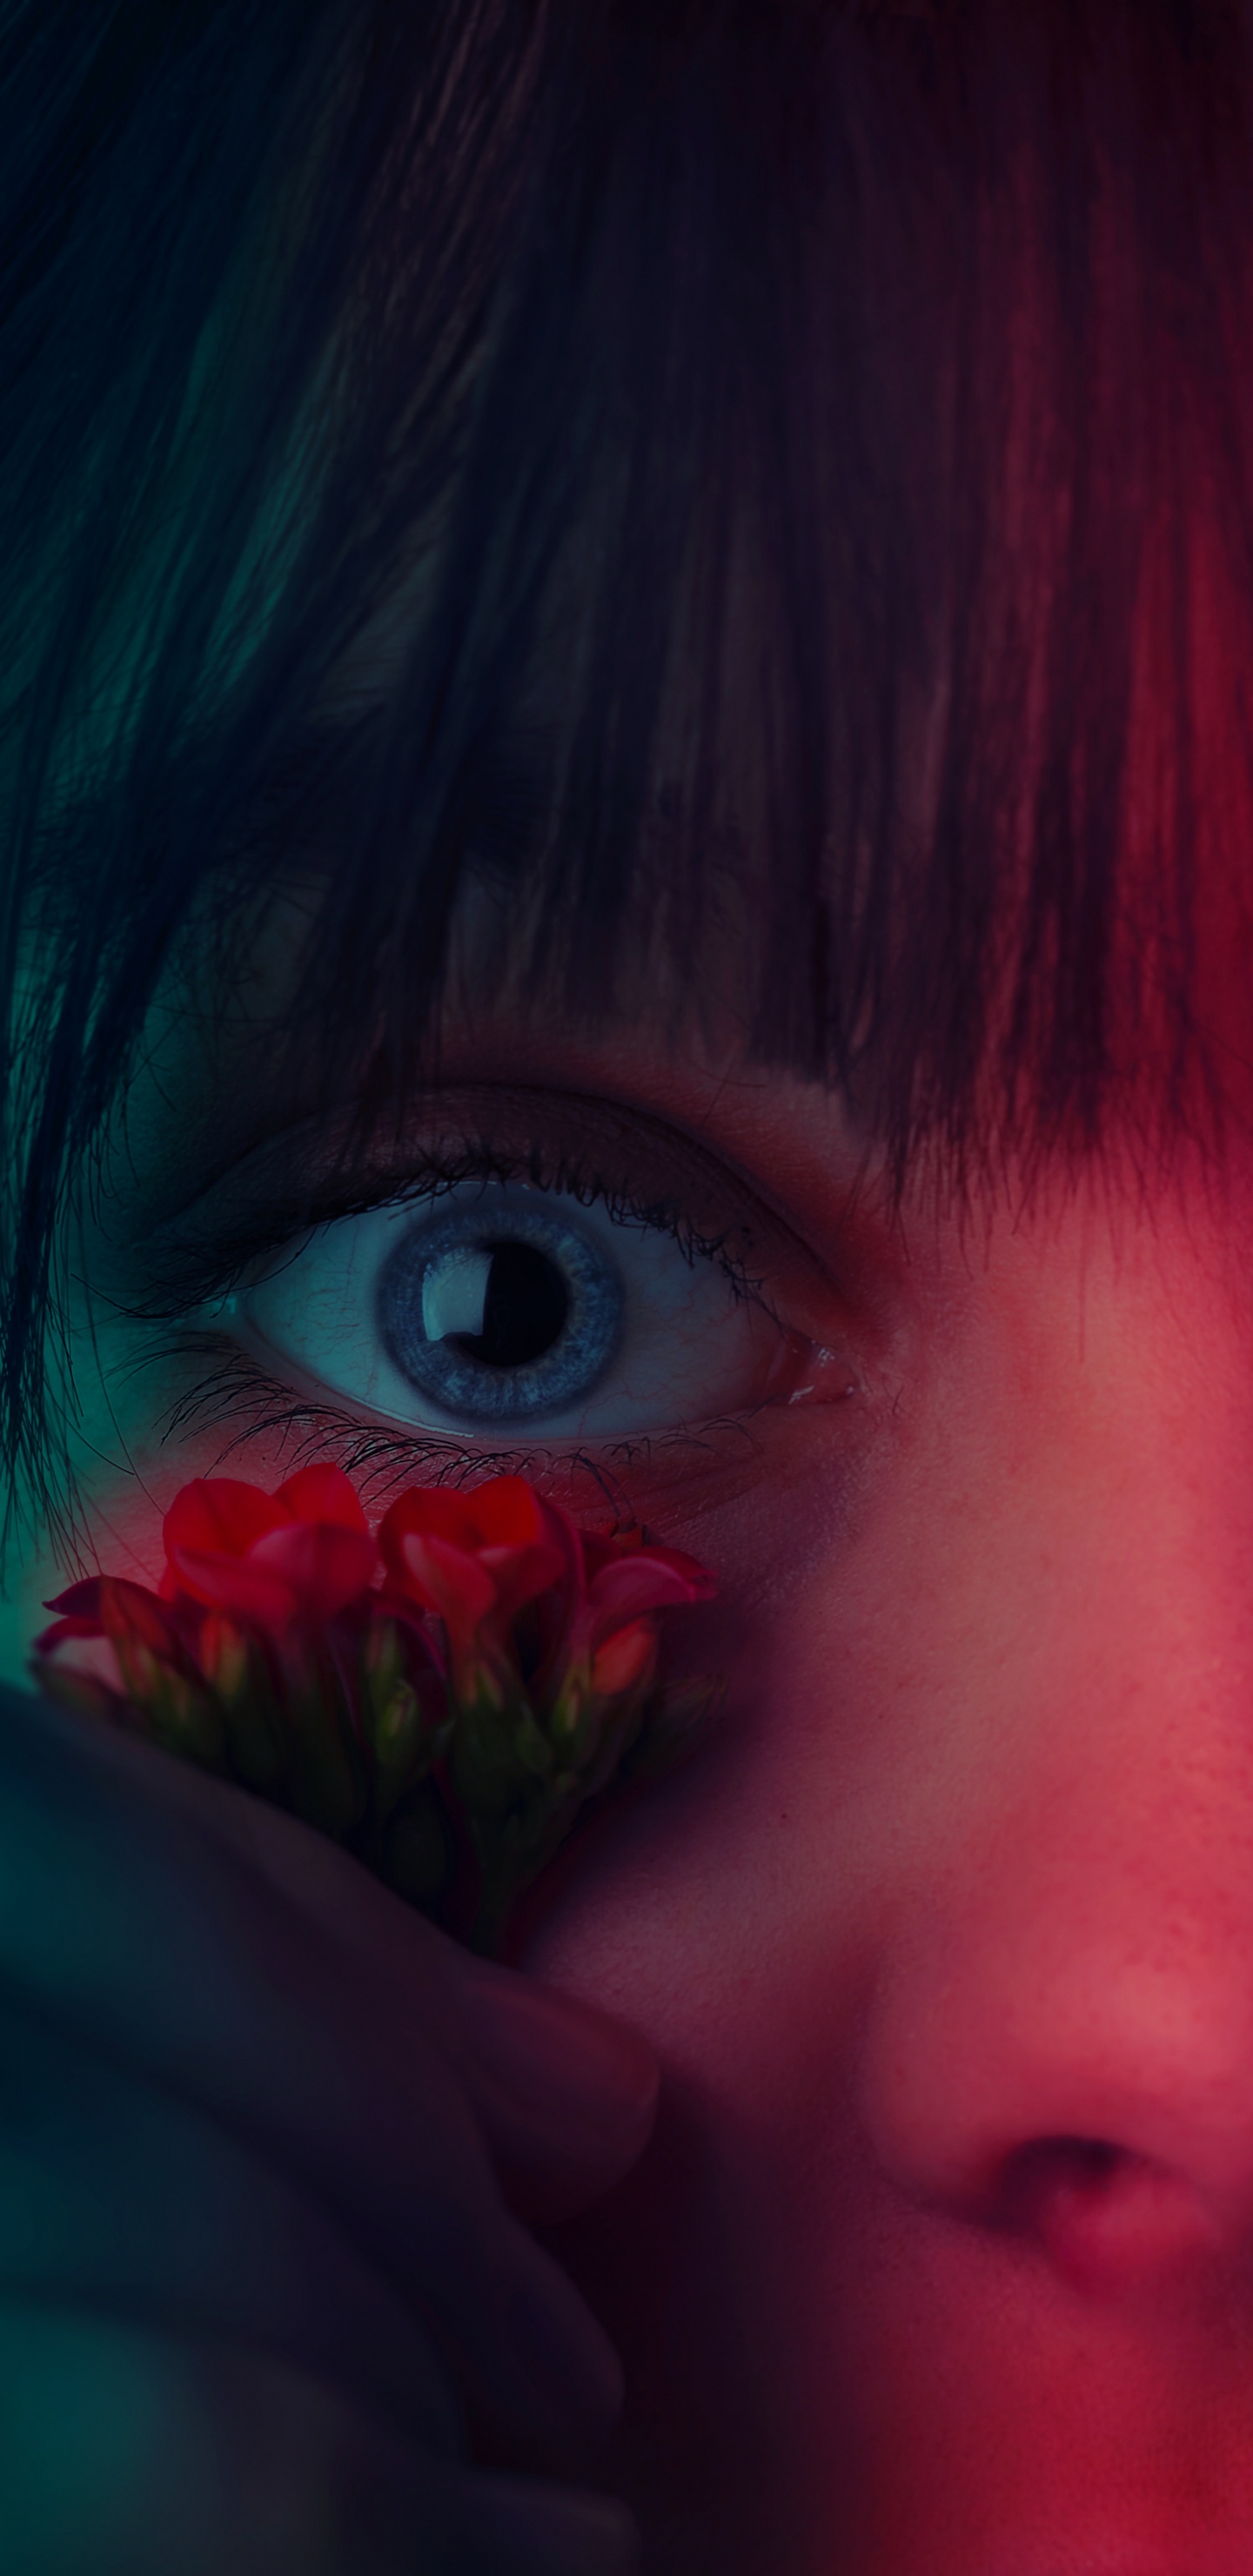 Mädchen Mit Roter Blume im Gesicht. Wallpaper in 1440x2960 Resolution